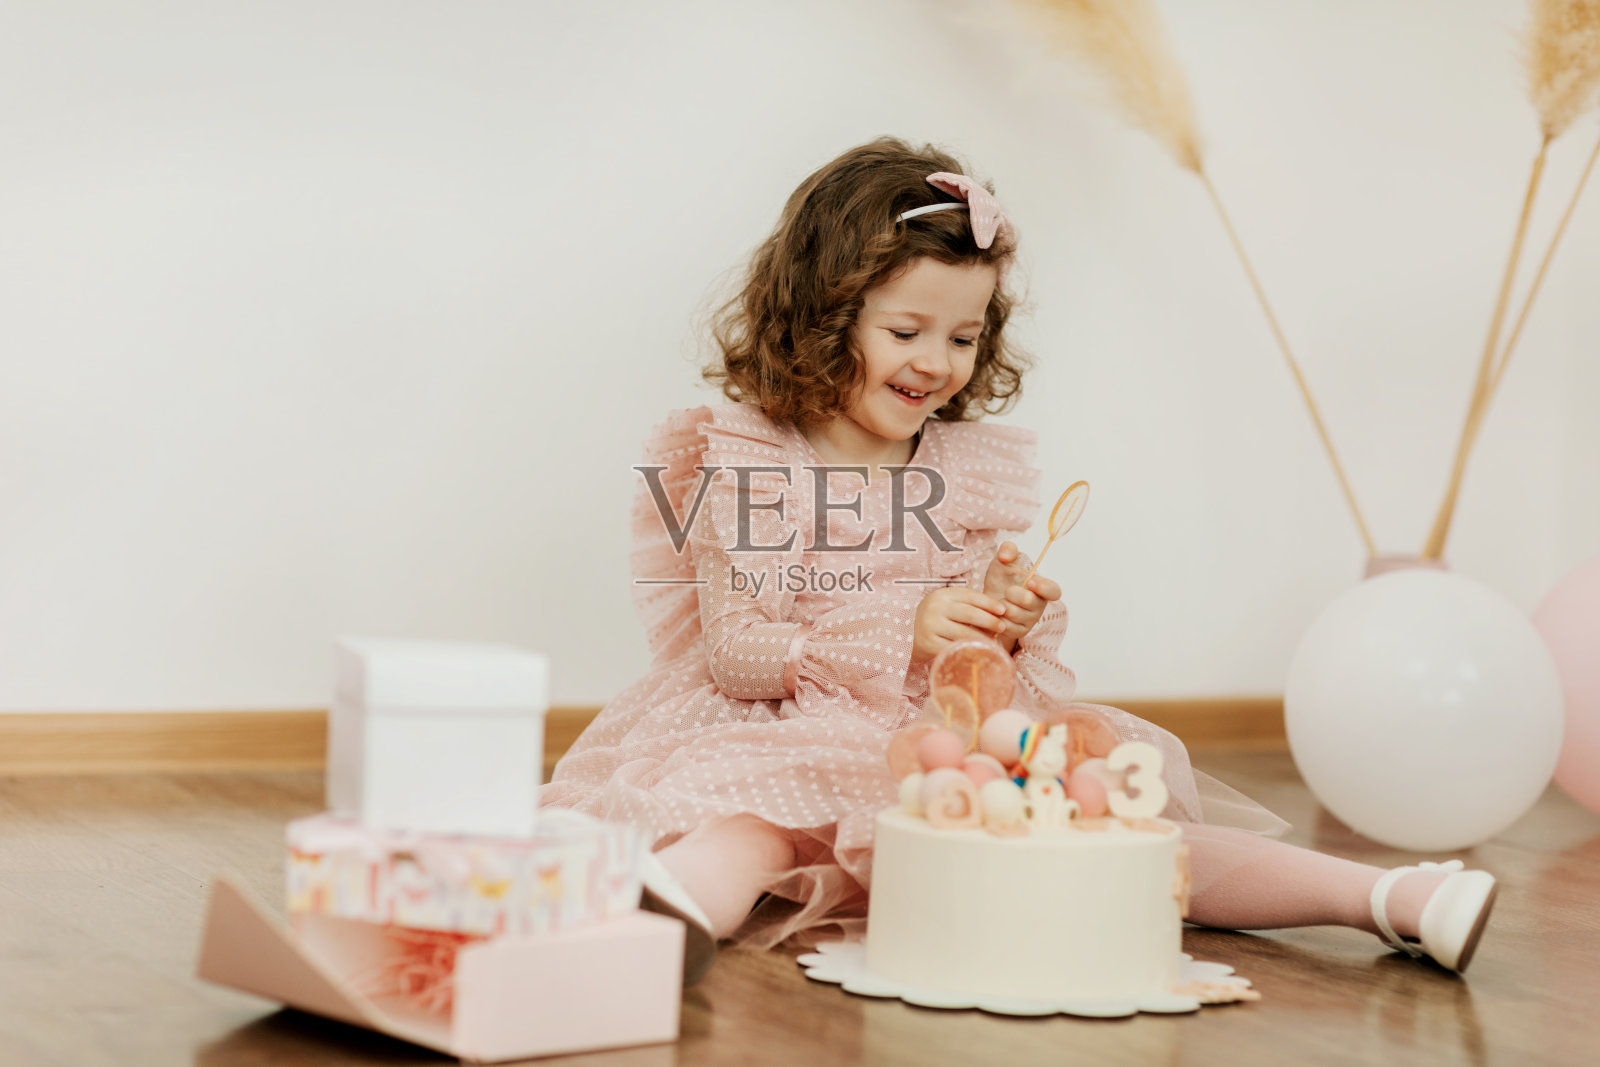 一个可爱的小女孩在她的生日那天拿着蛋糕和礼物坐在地板上开心地笑照片摄影图片